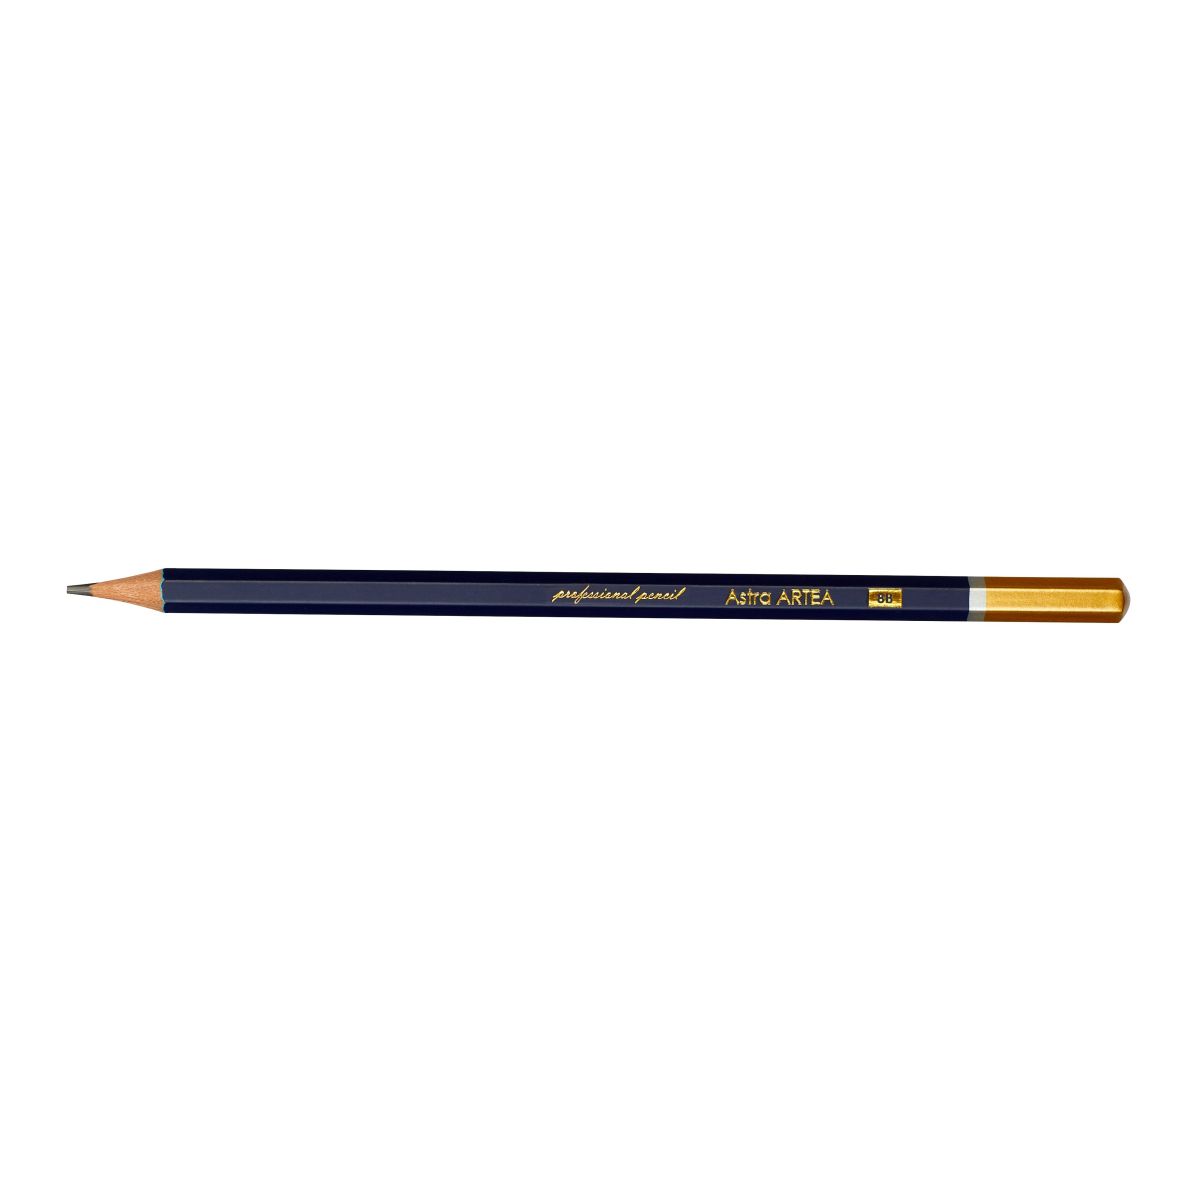 Ołówek Artea 8B